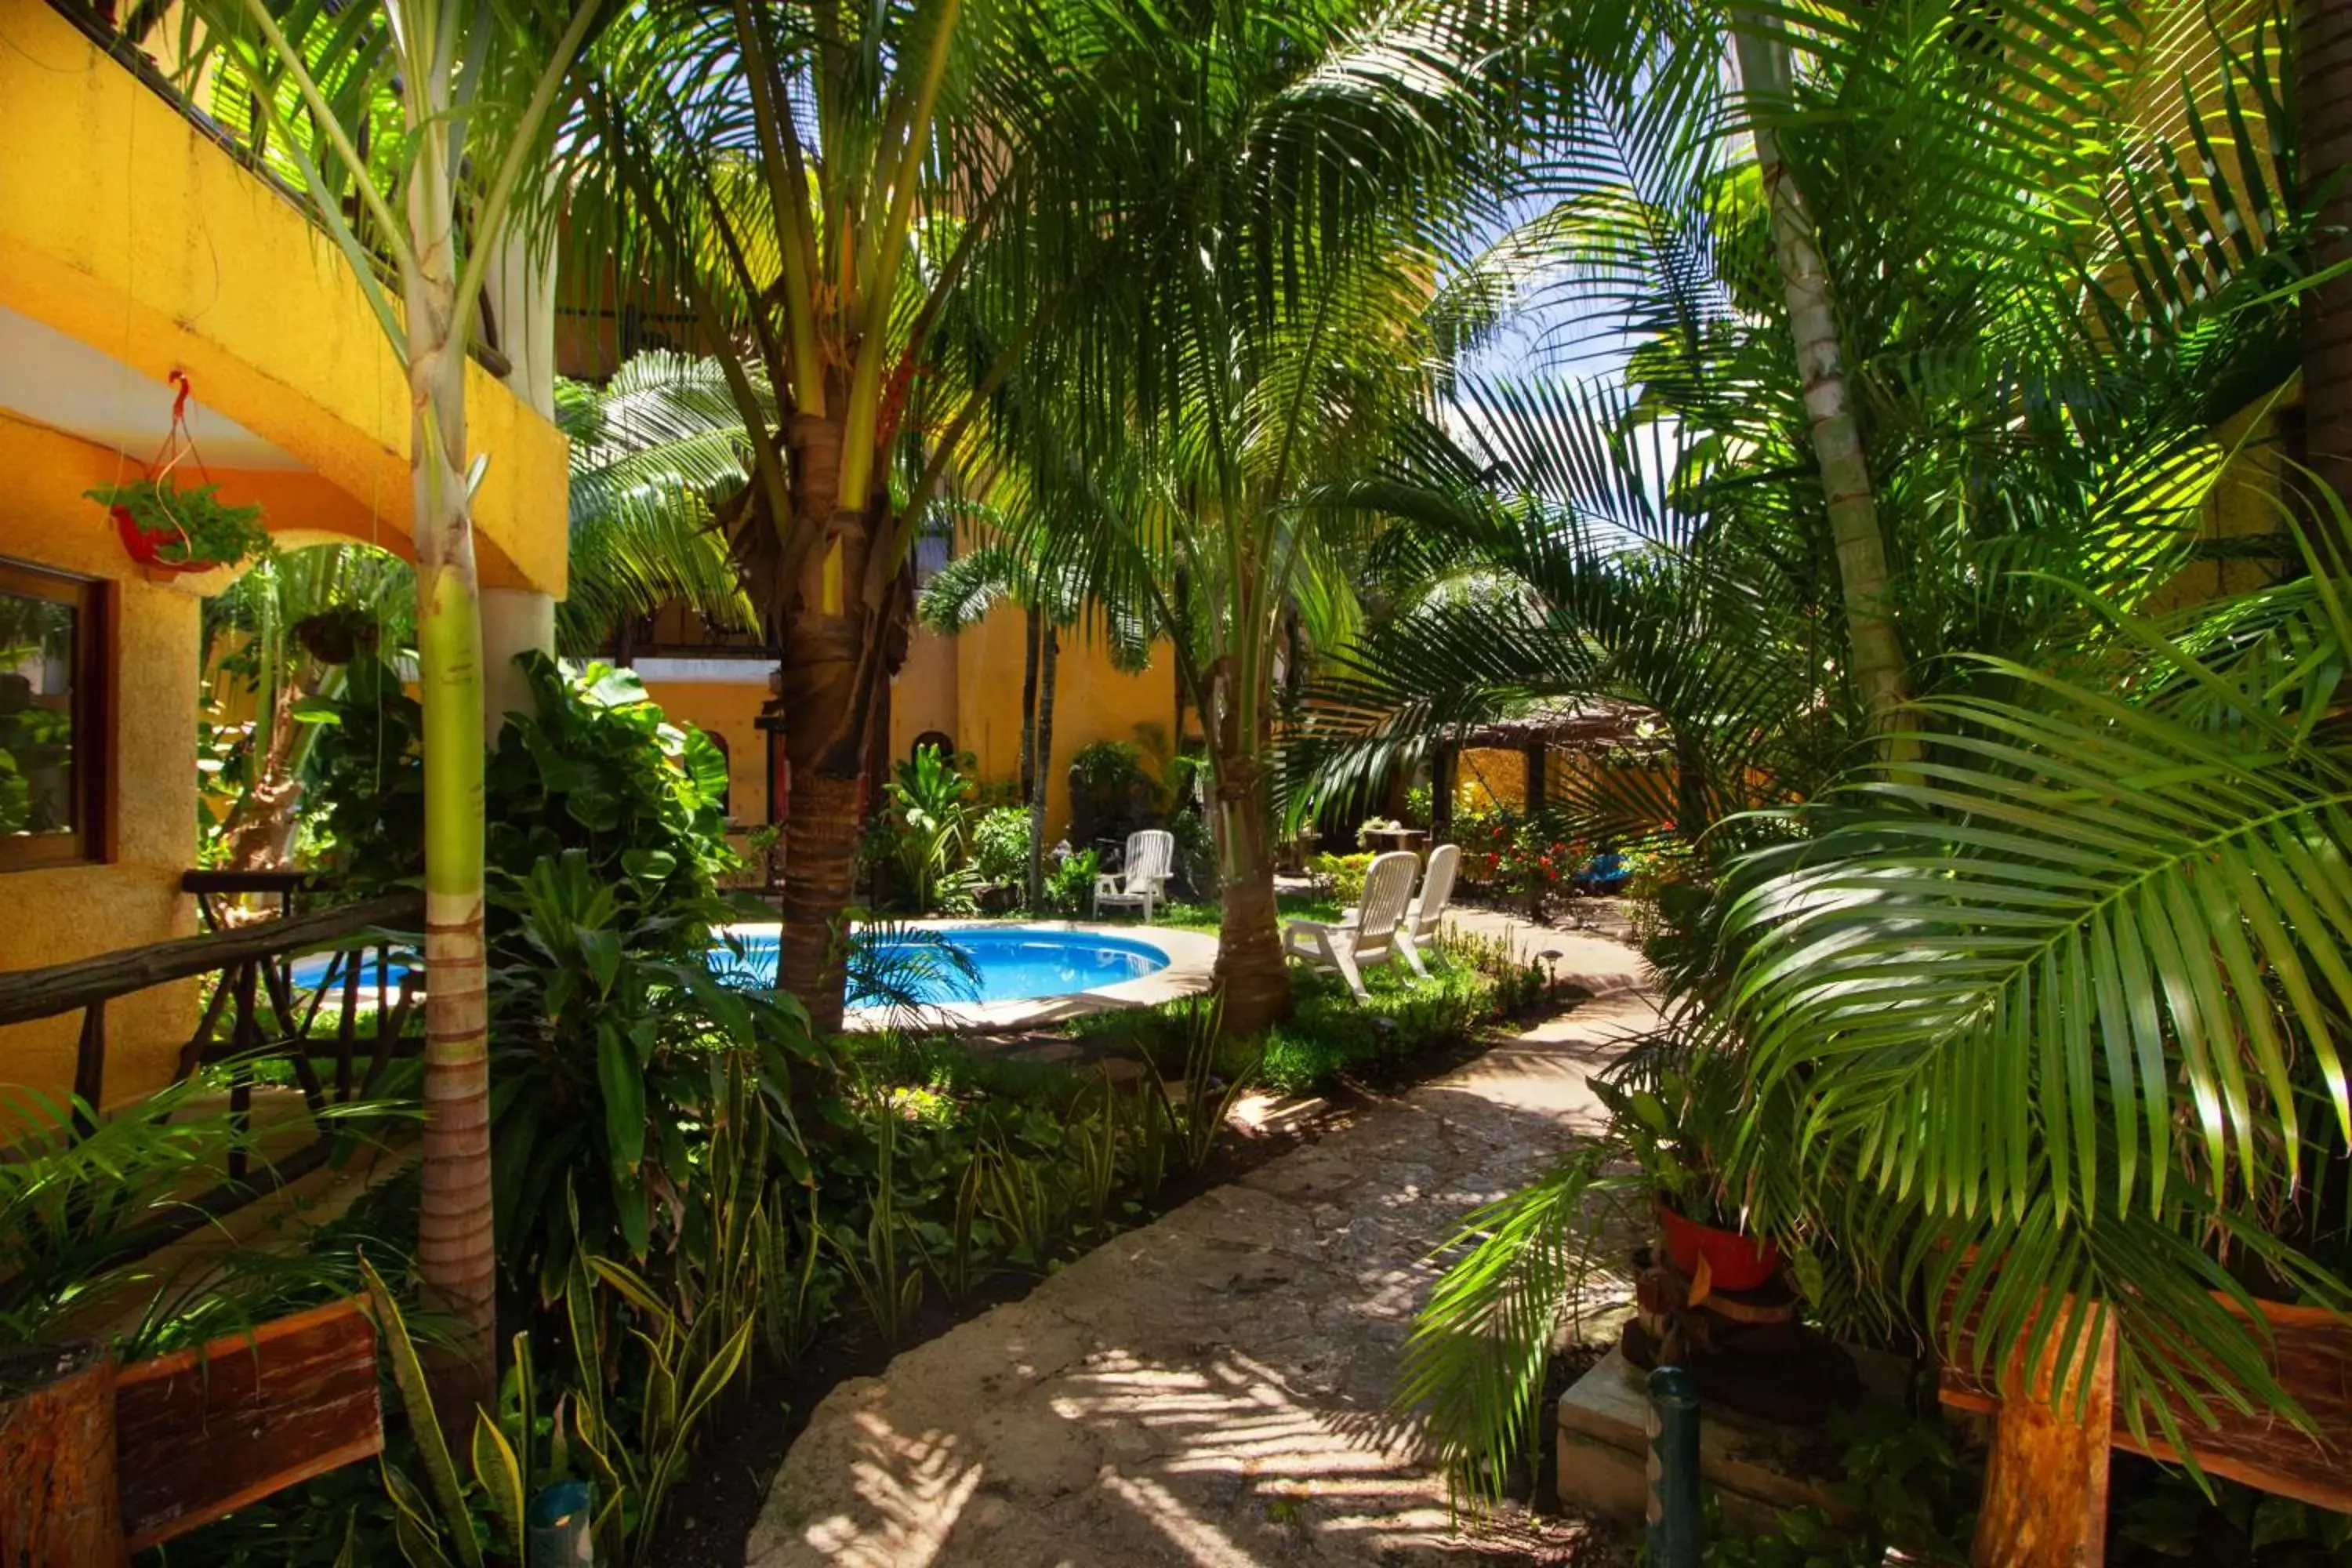 Off site, Swimming Pool in Hotel Bosque Caribe, 5th Av. zone